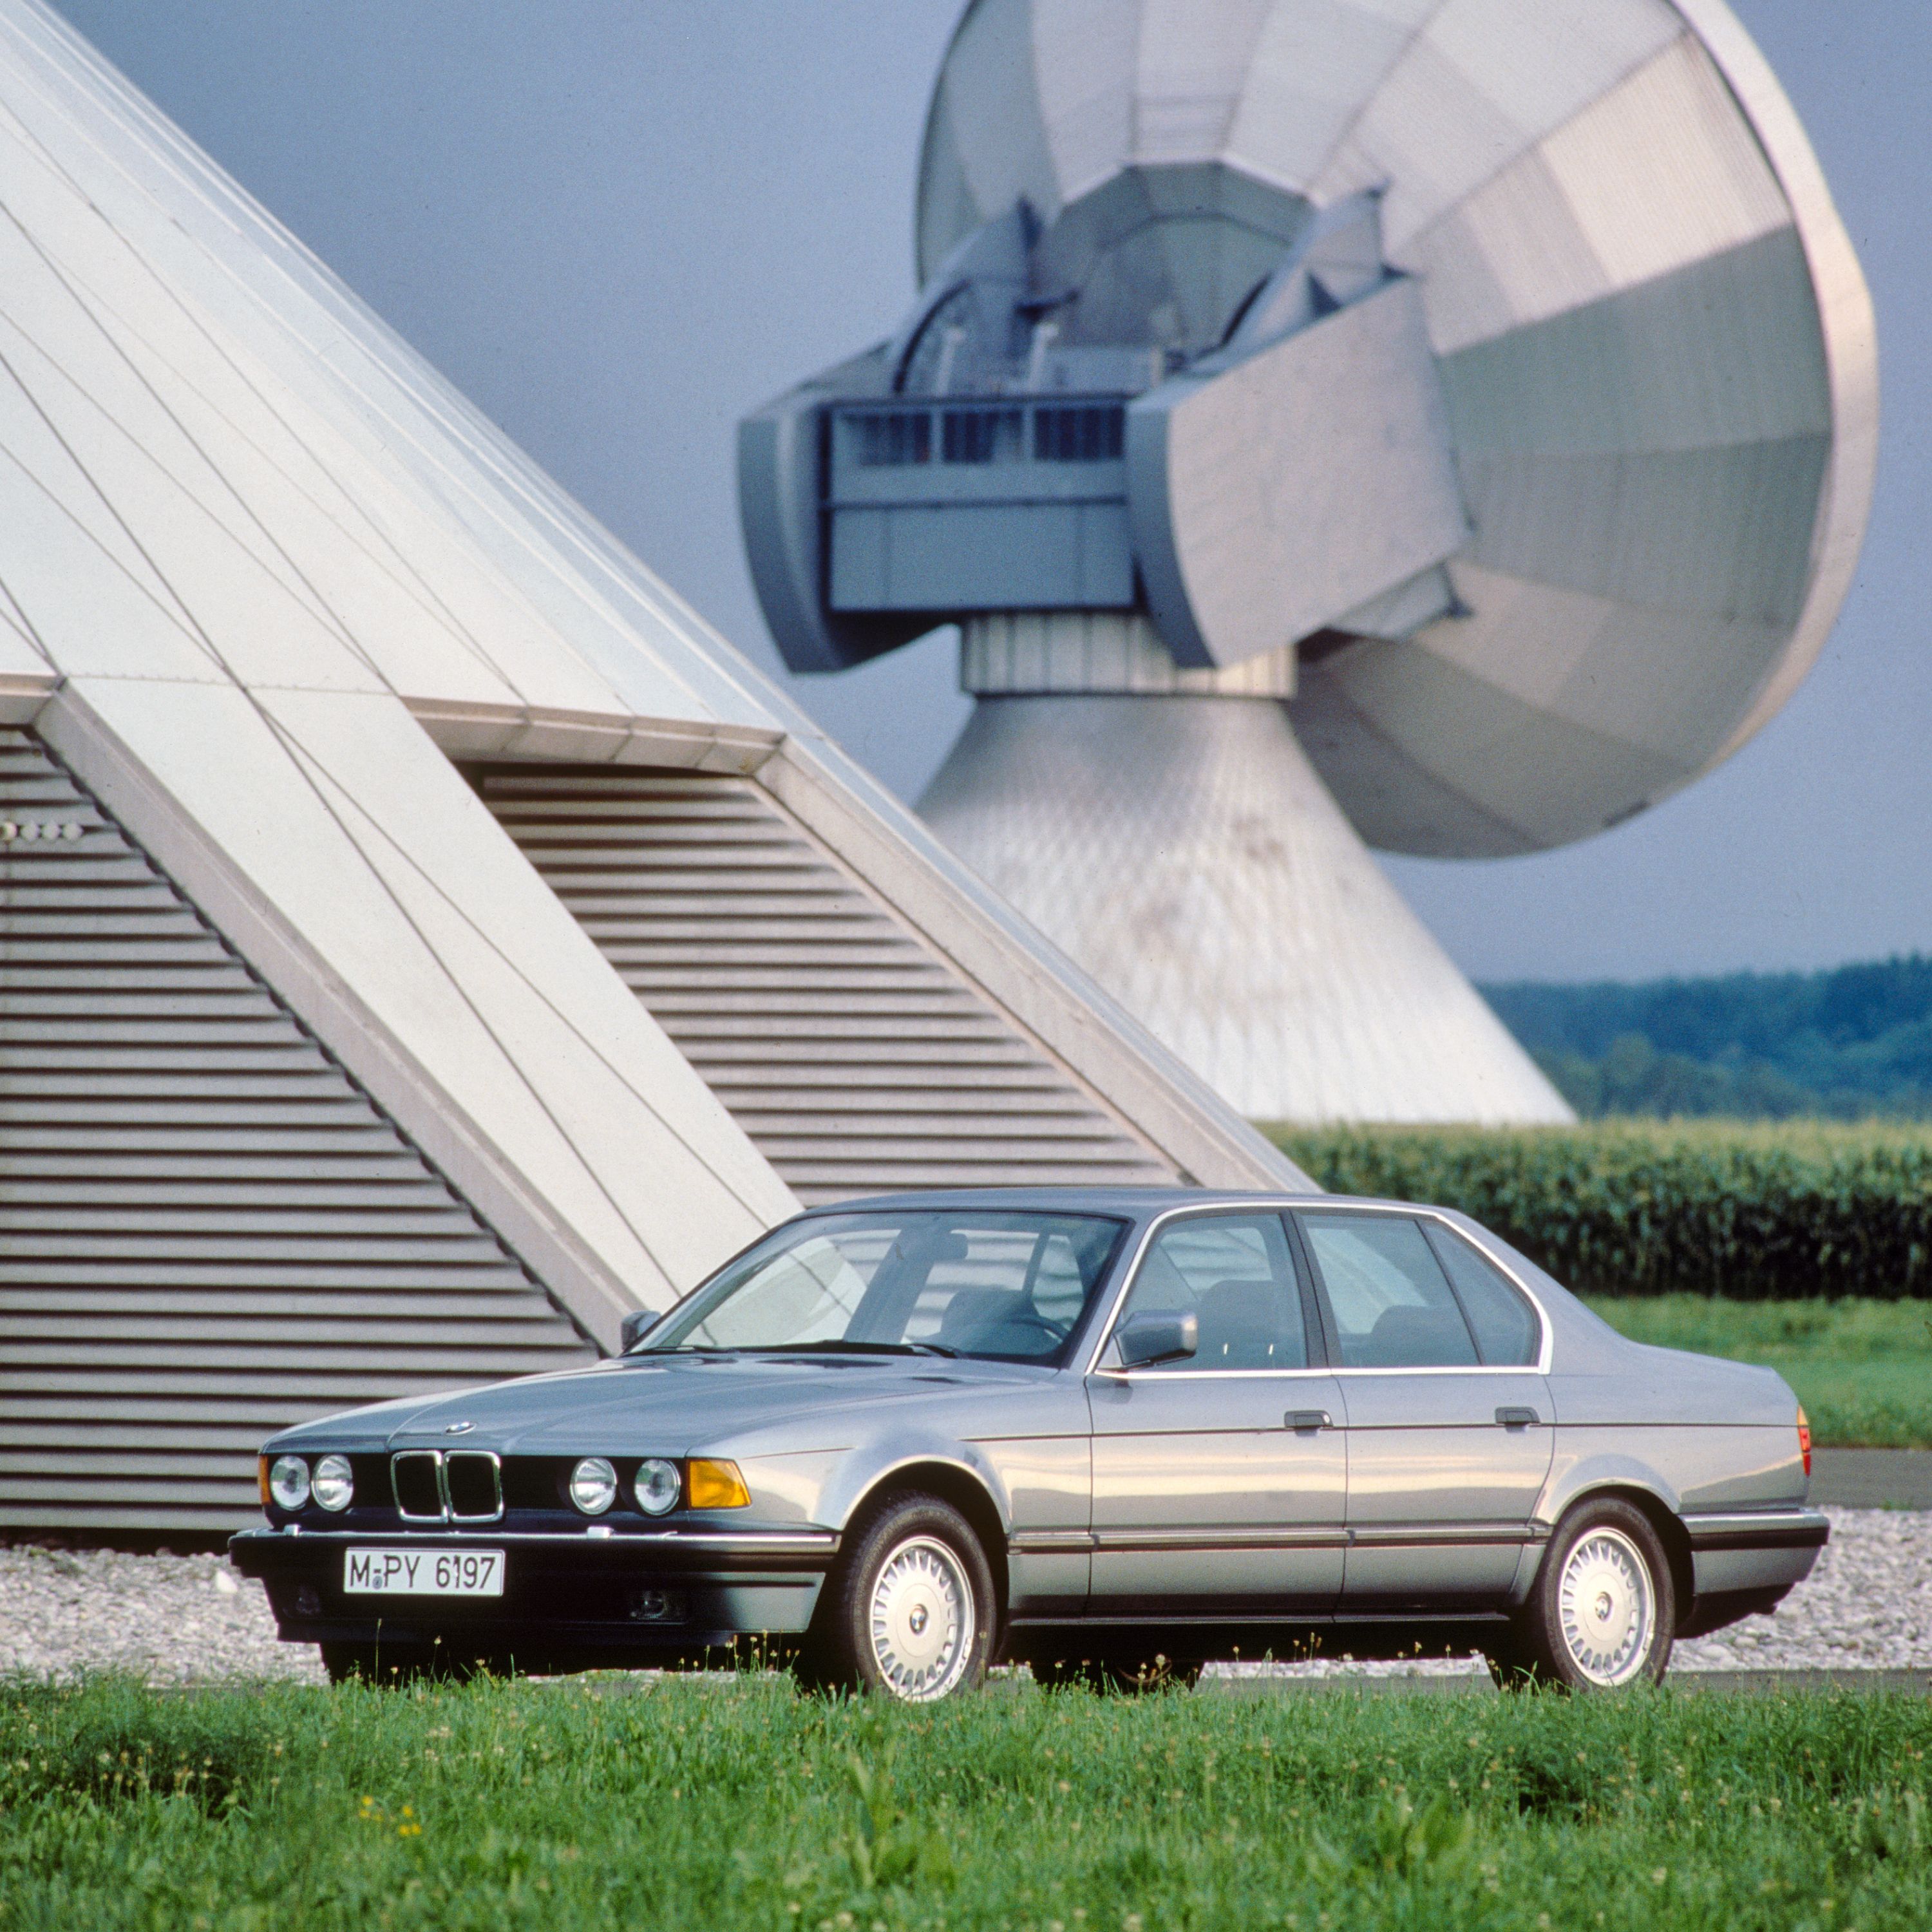 BMW 7er Limousine E32 in landwirtschaftlicher Umgebung umgeben von Feldern und Agraranlagen